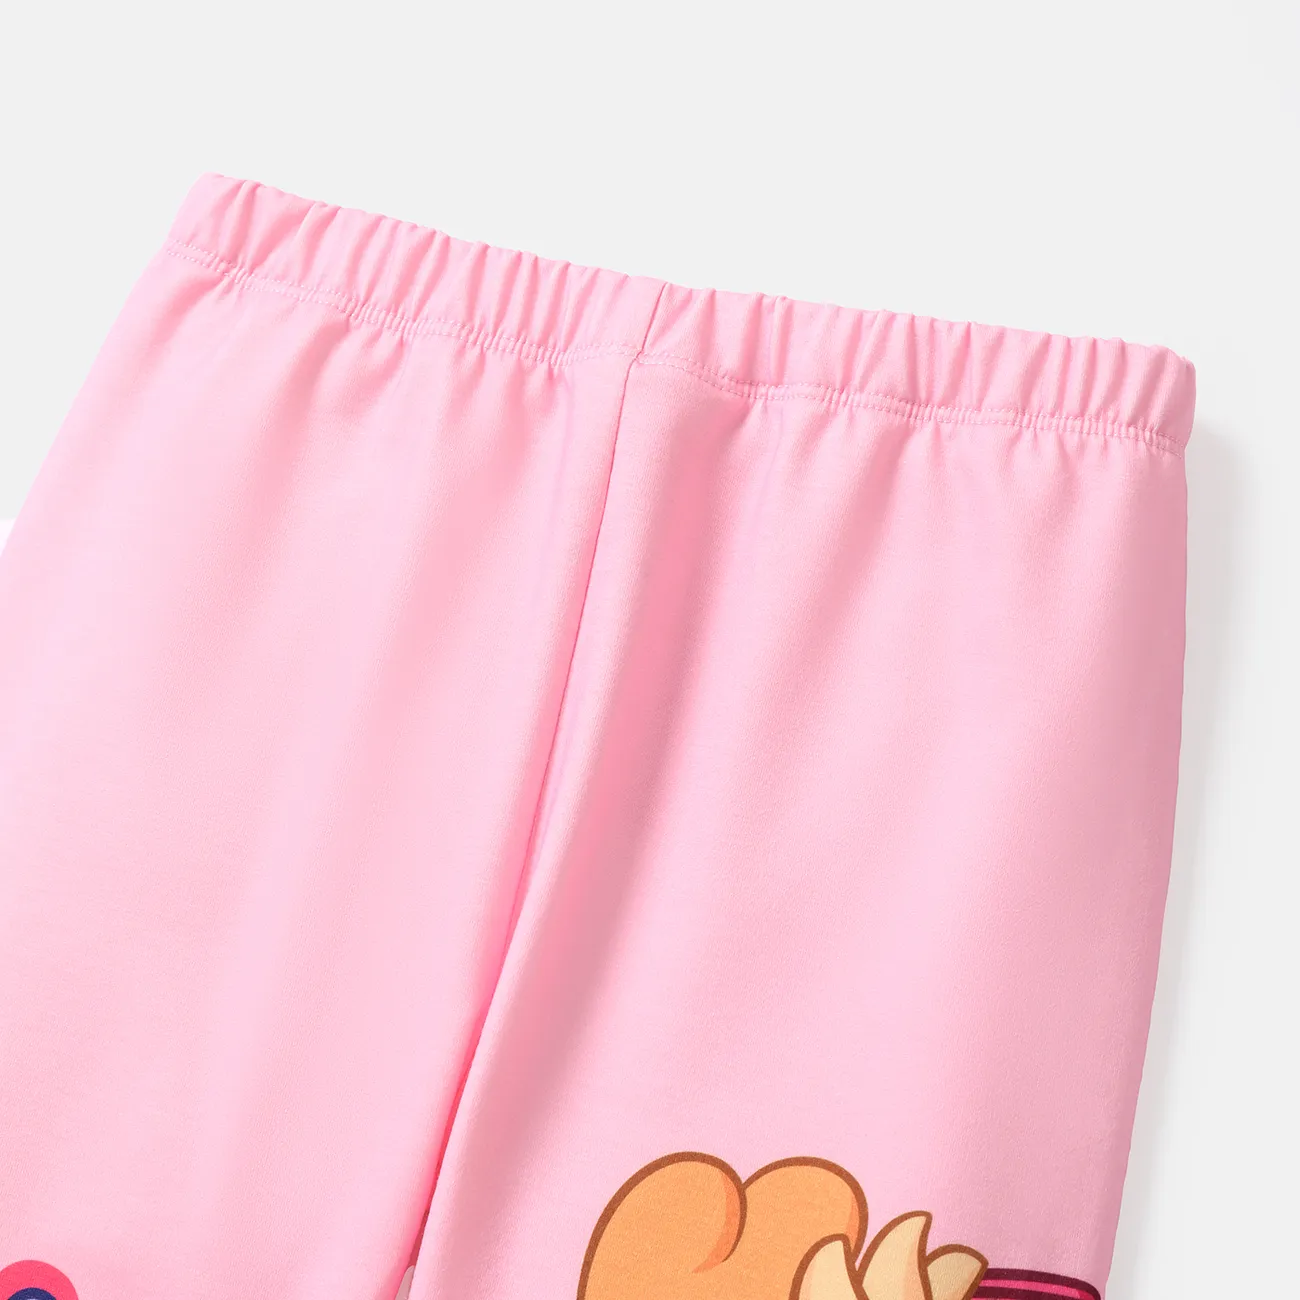 Pantalones elásticos con bloques de color para niño/niña de la Patrulla Canina Rosado big image 1